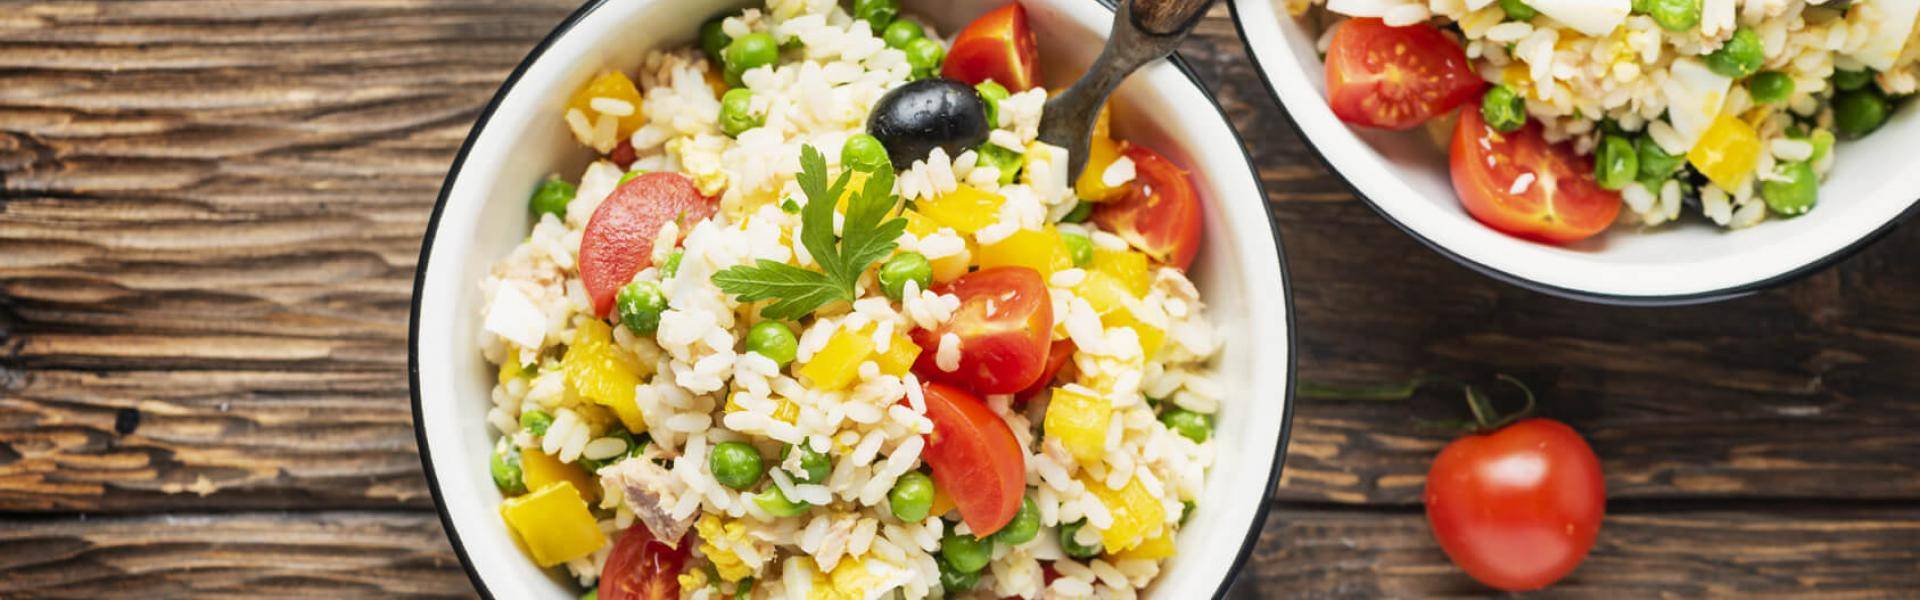 L'insalata di riso fresca condita a piacere è il piatto estivo per eccellenza